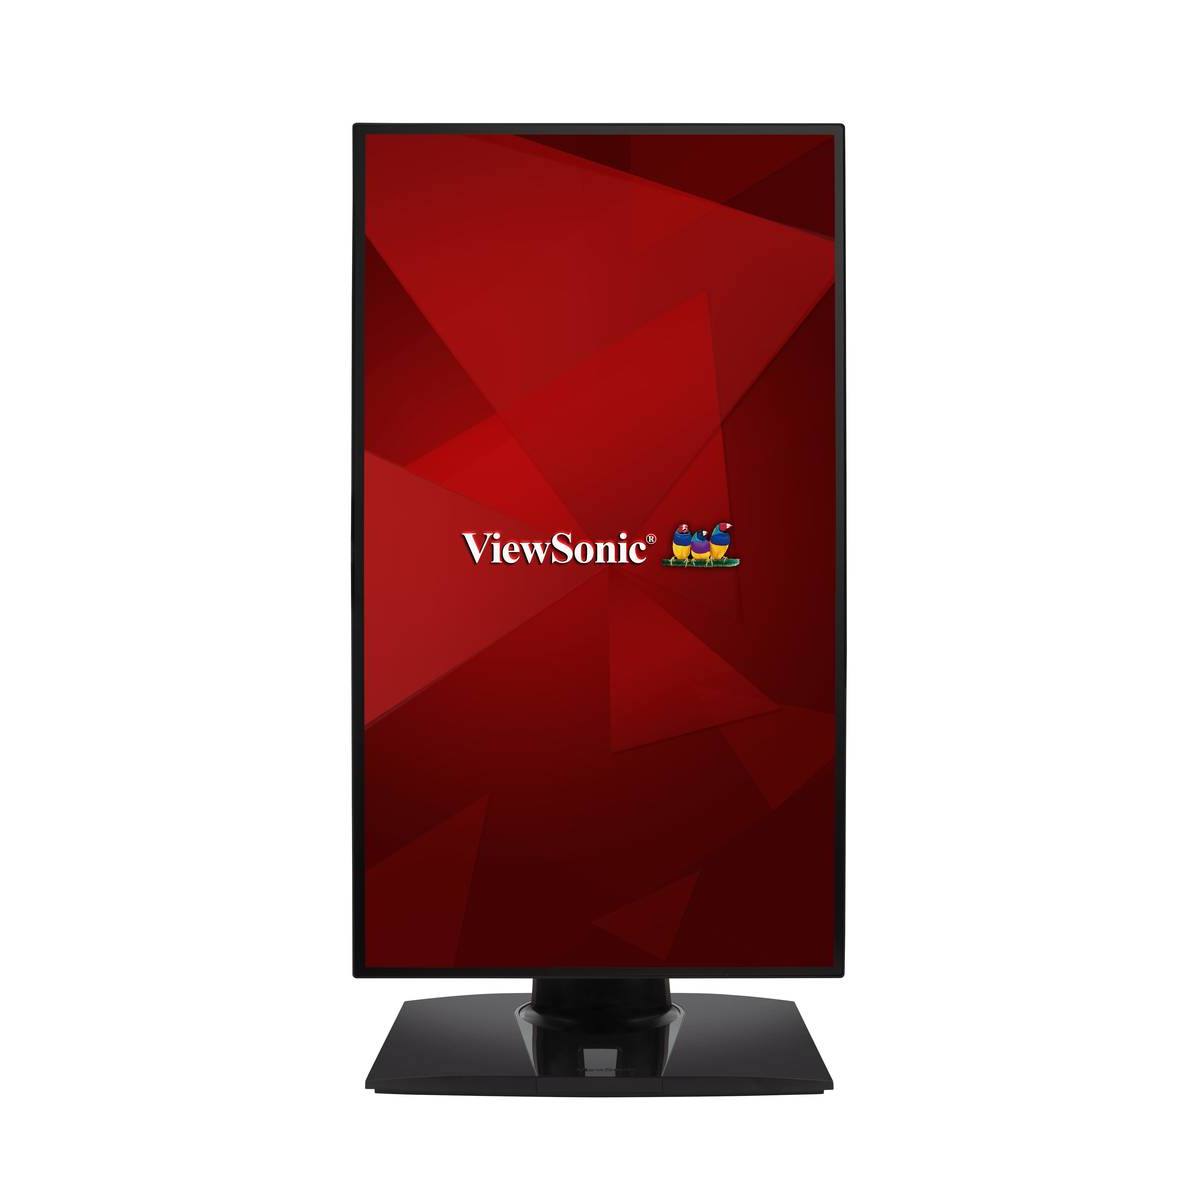 Viewsonic VP2458